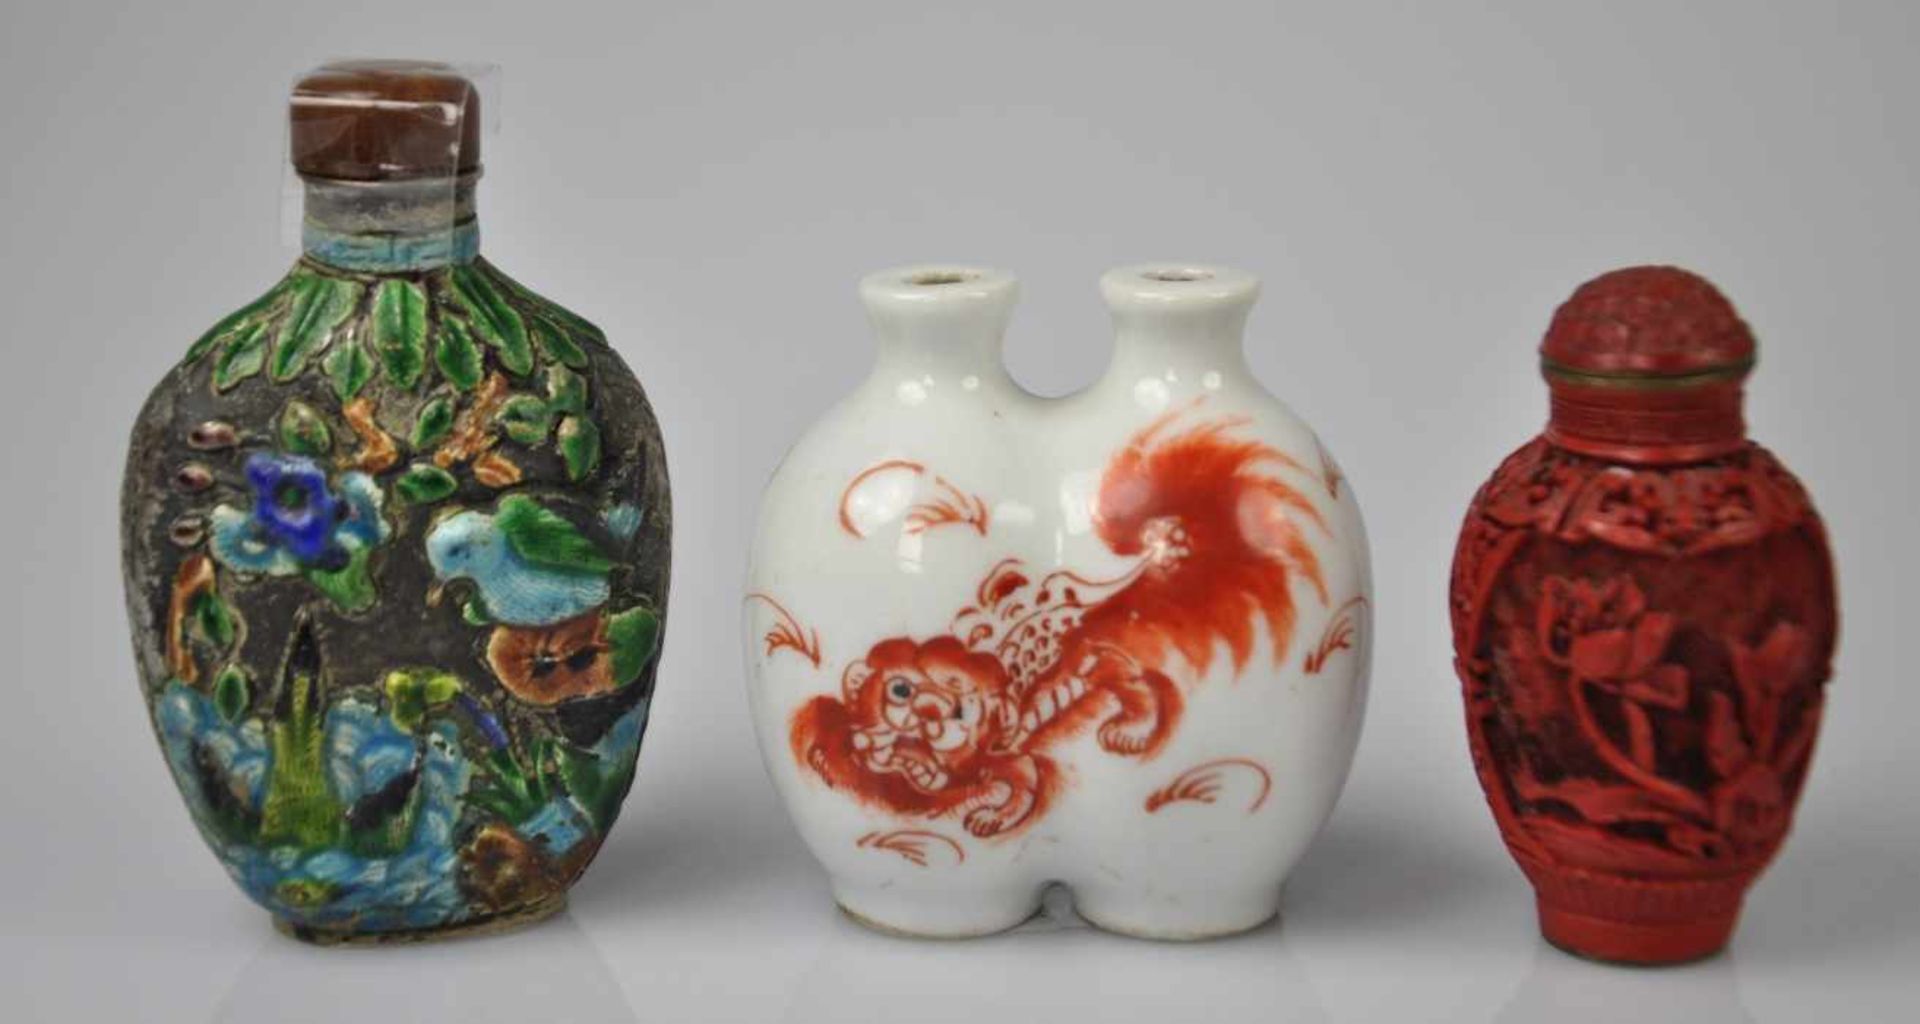 3 SNUFF BOTTLES bestehend aus einer Bottle aus Porzellan dekoriert mit rotem Drachen, einer aus